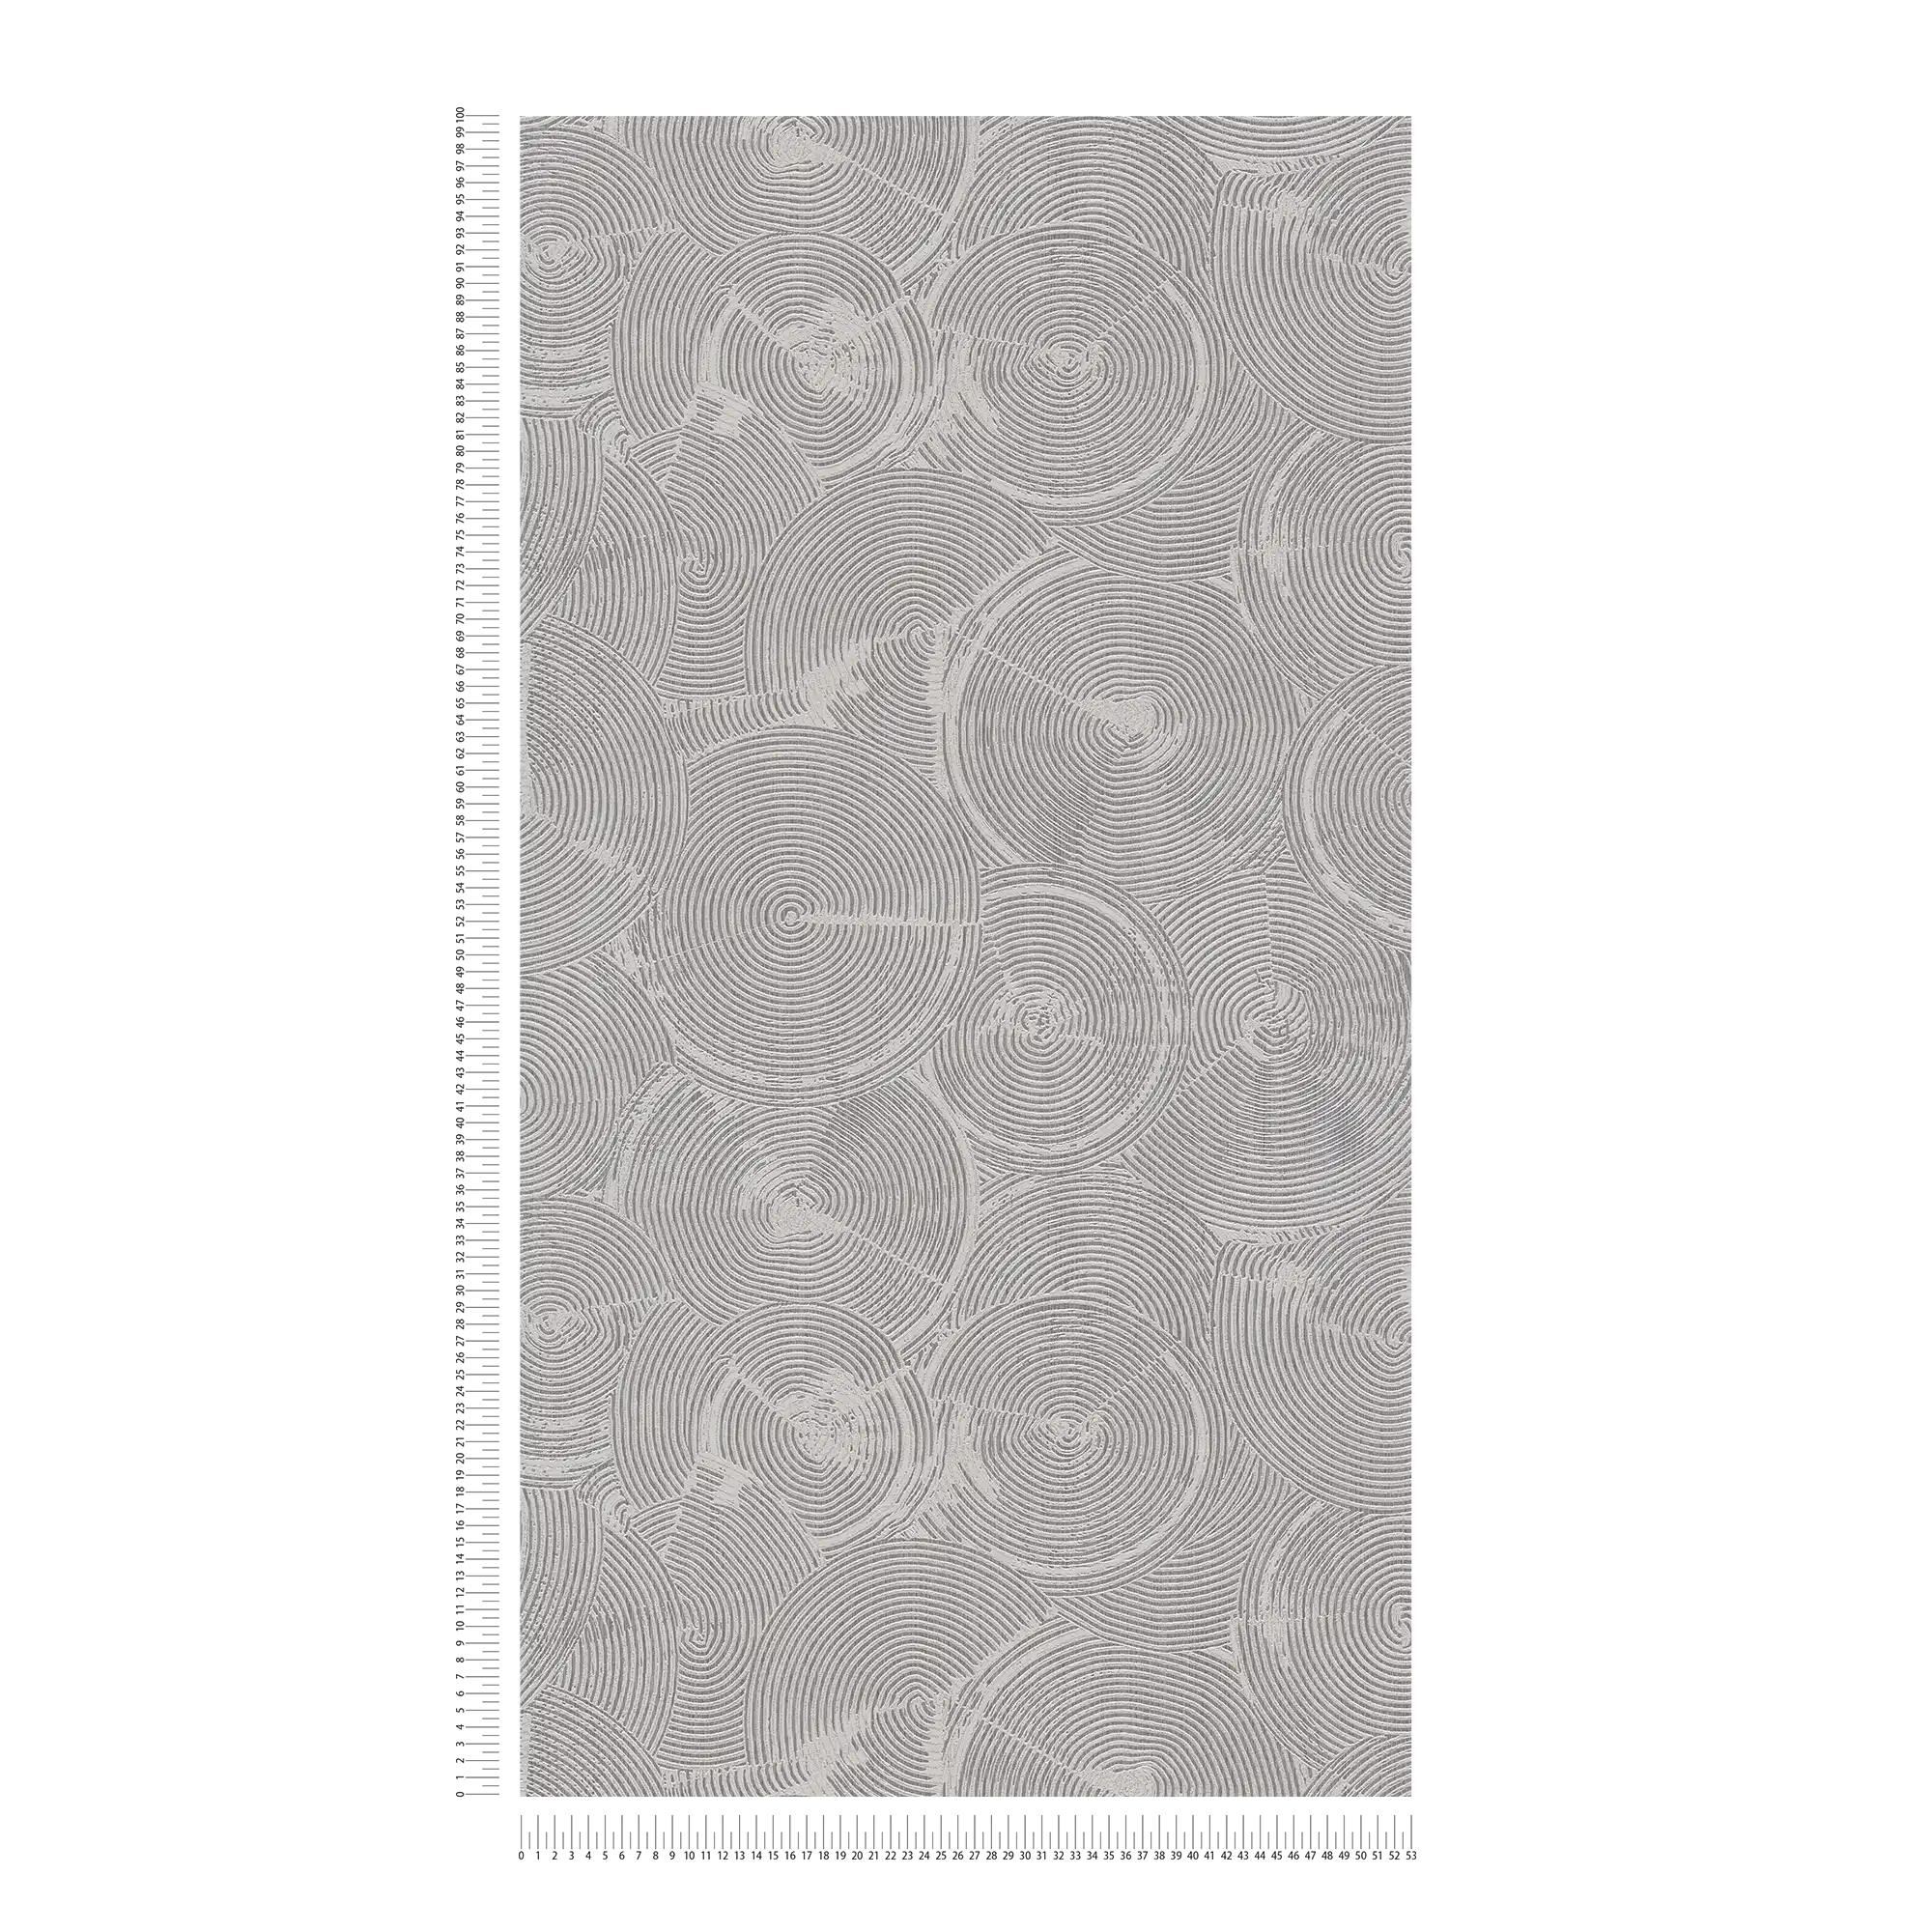             Gipsoptisch behang met zilvermetallic effect - grijs, metallic, wit
        